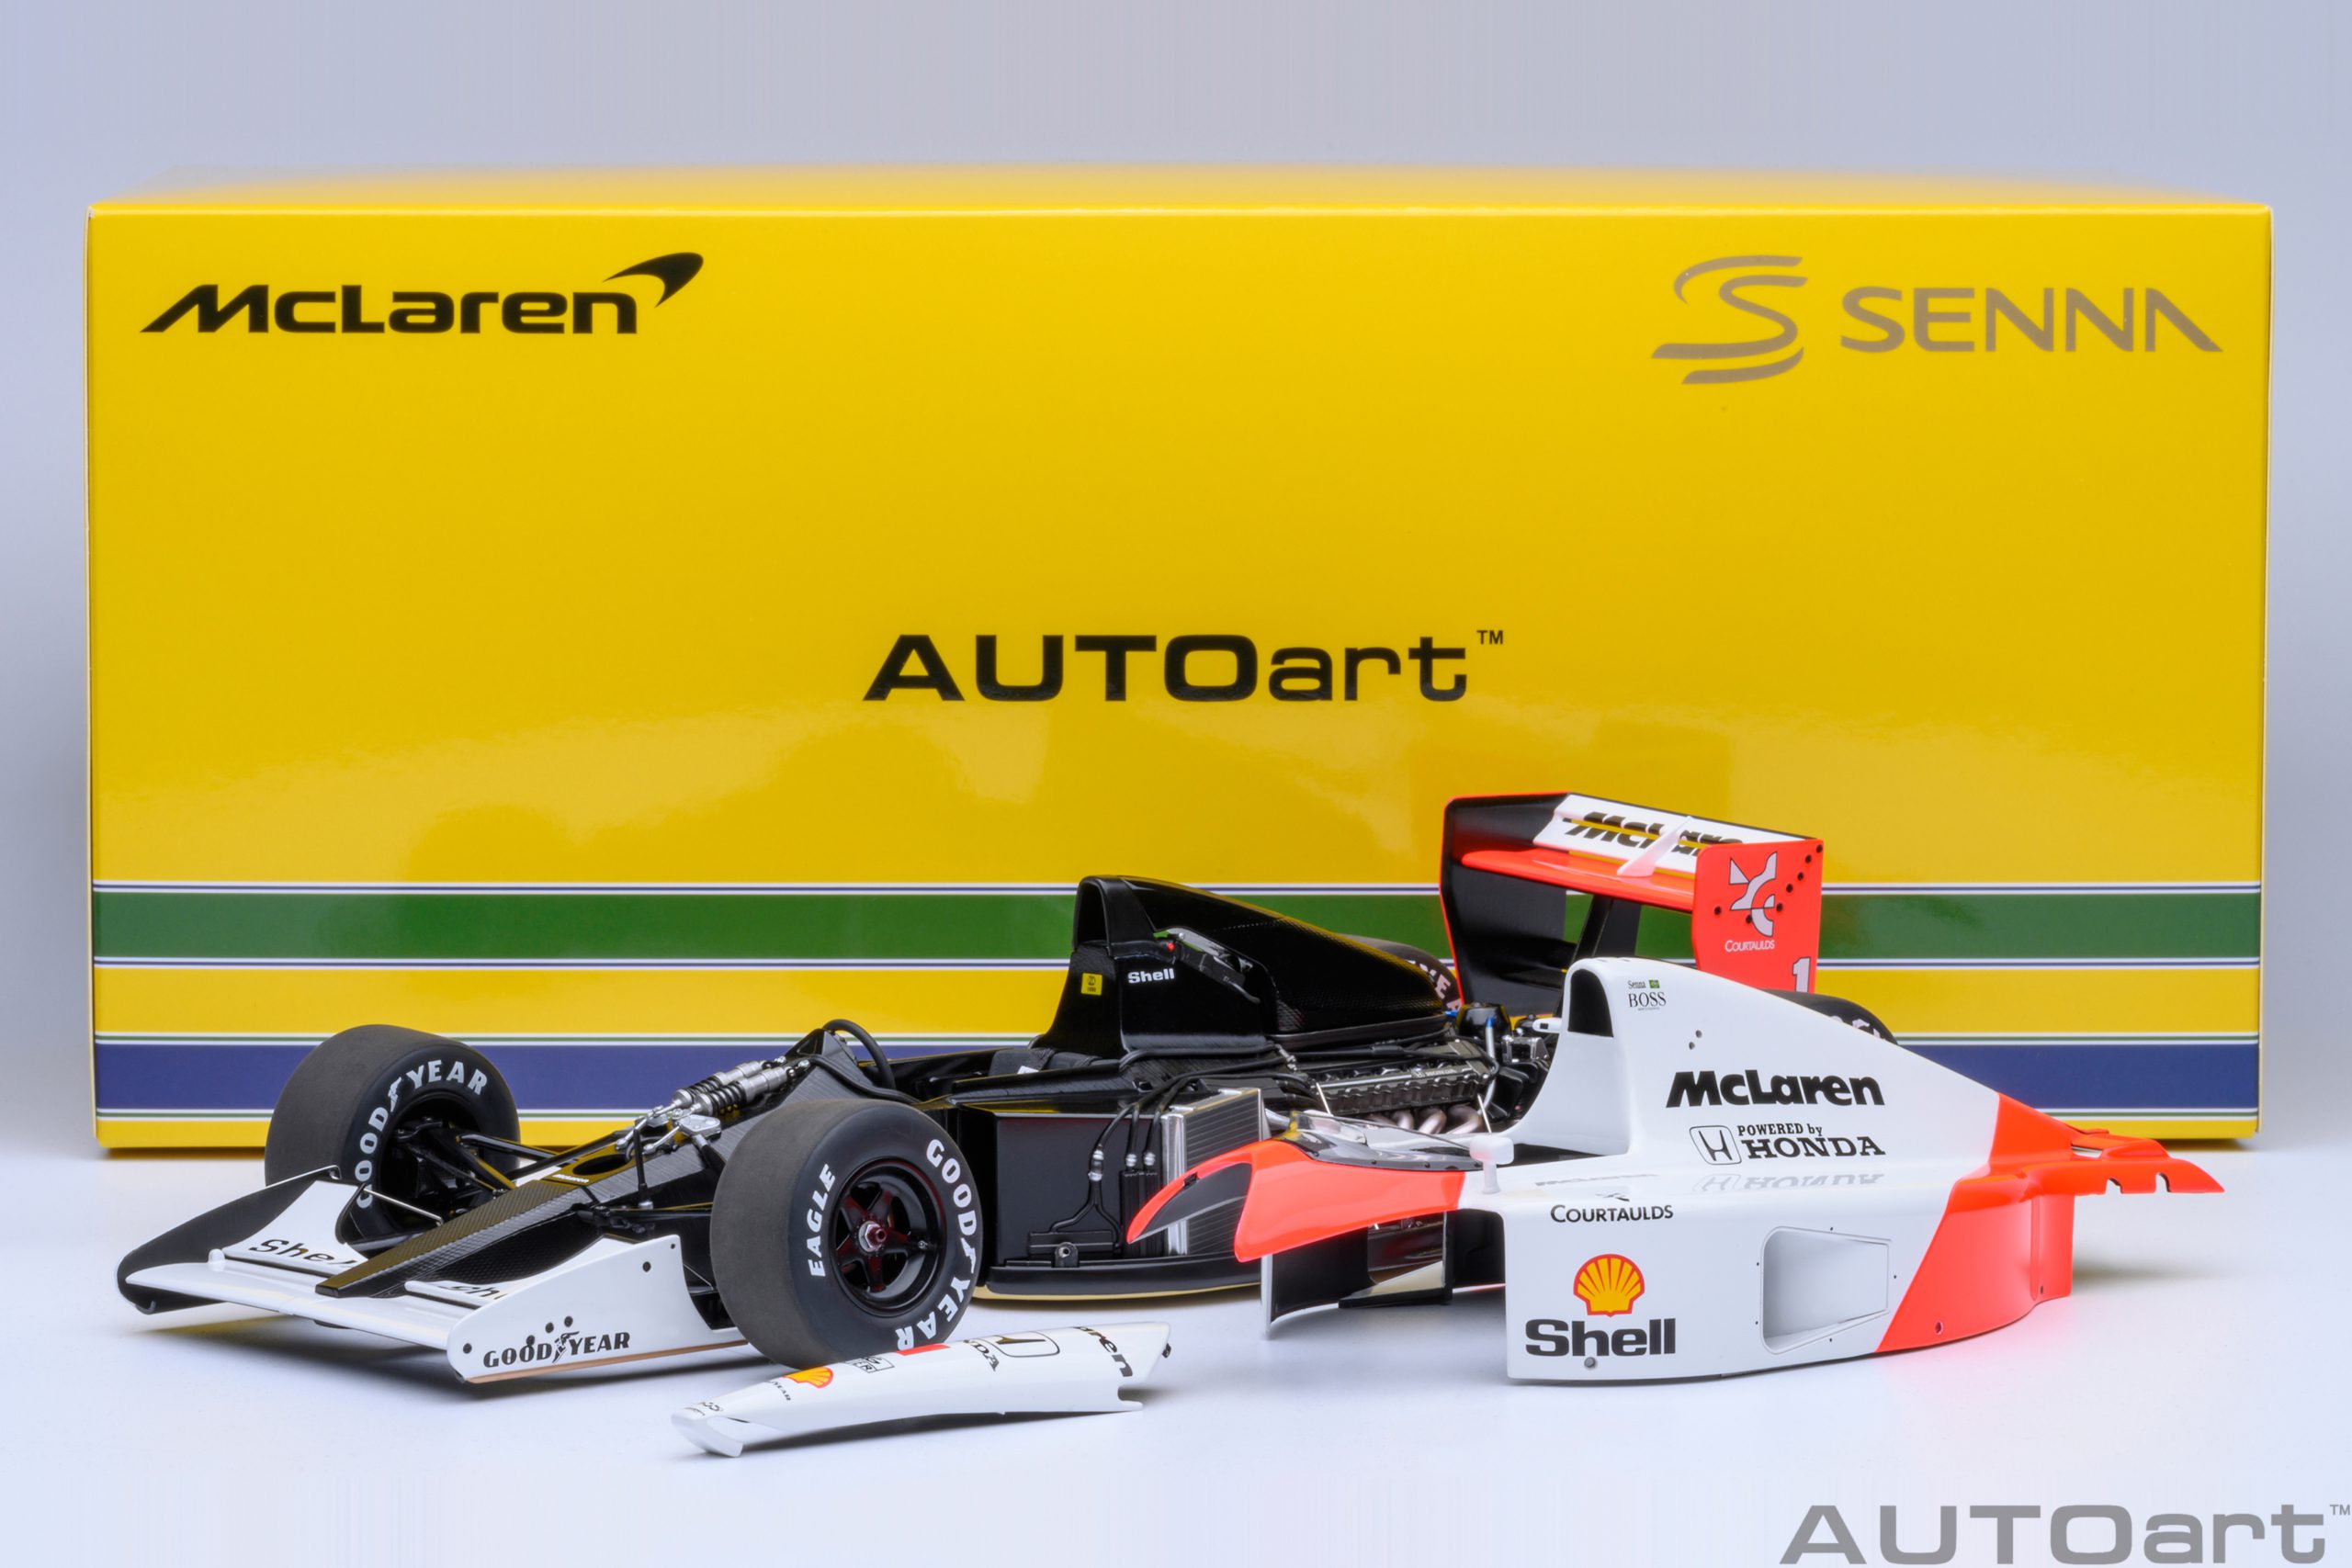 autoart-89140-1-McLaren-Honda-MP-4-6-Japanese-GP-1991-Ayrton-Senna-da-Silva-No-1-Sempre